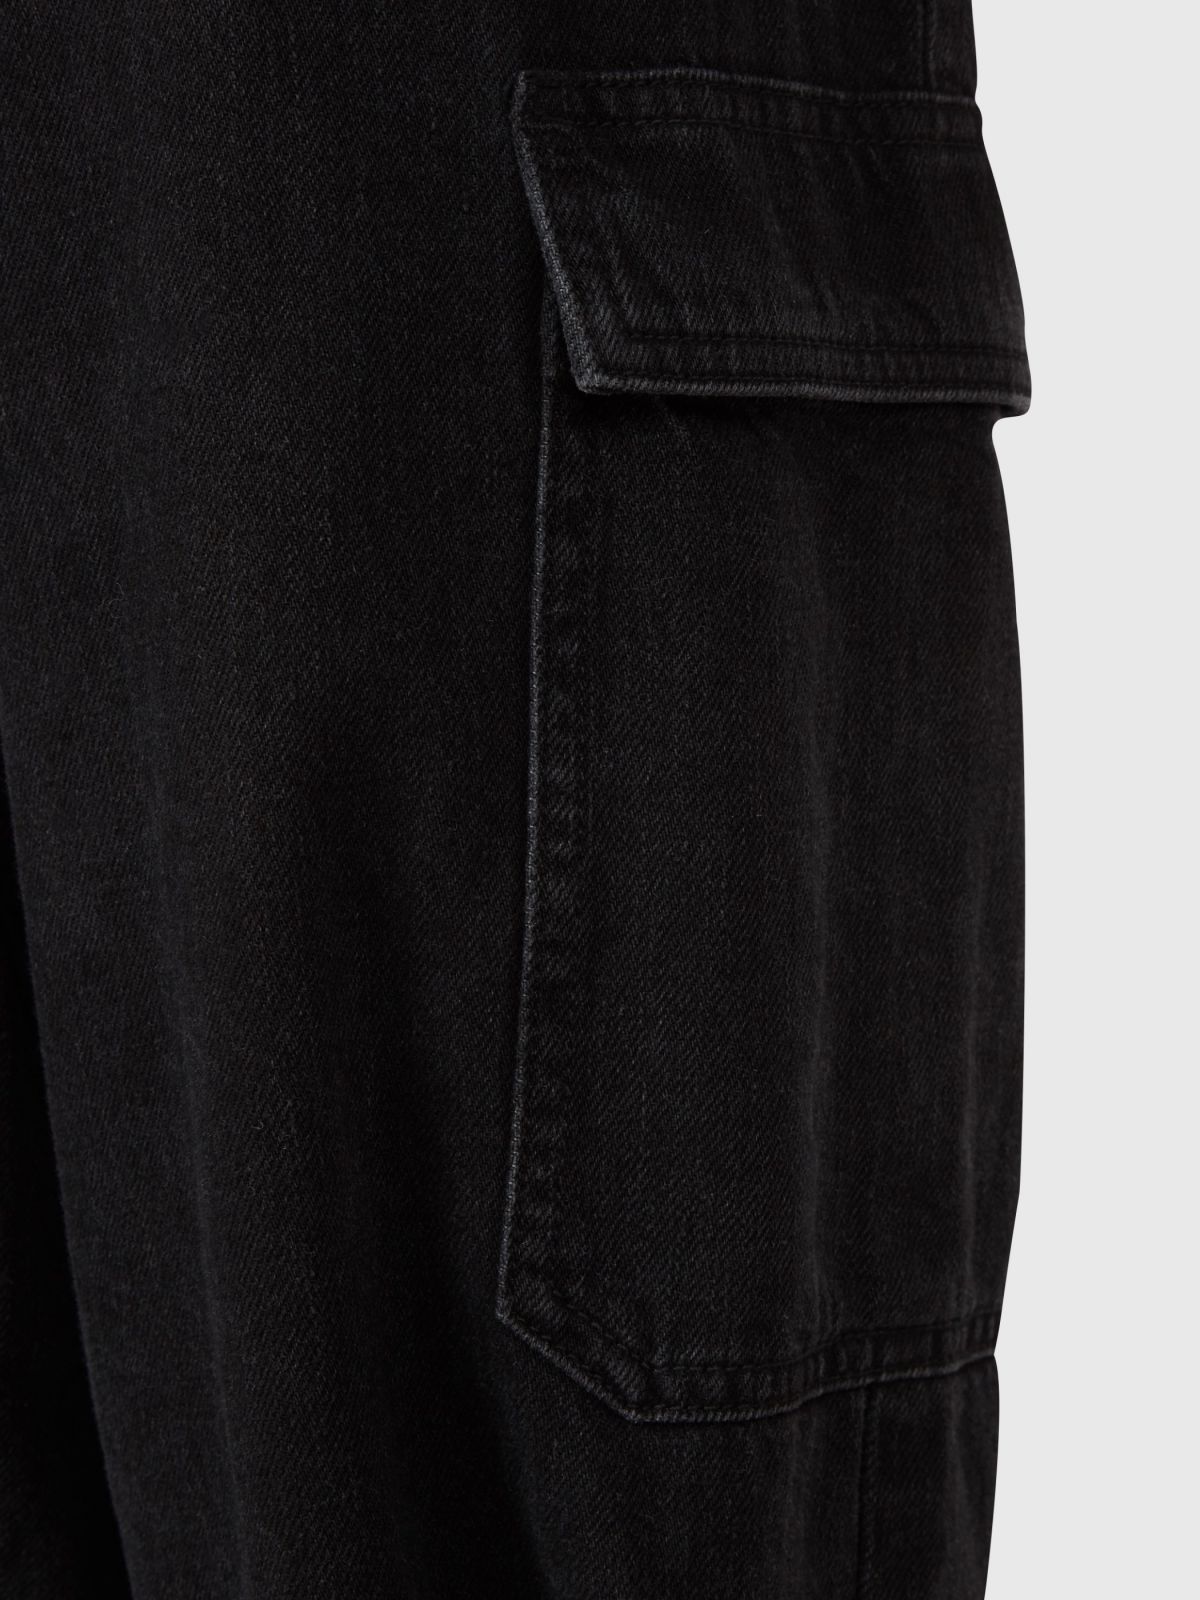  ג'ינס פייפרבאג עם חגורה של ALL SAINTS